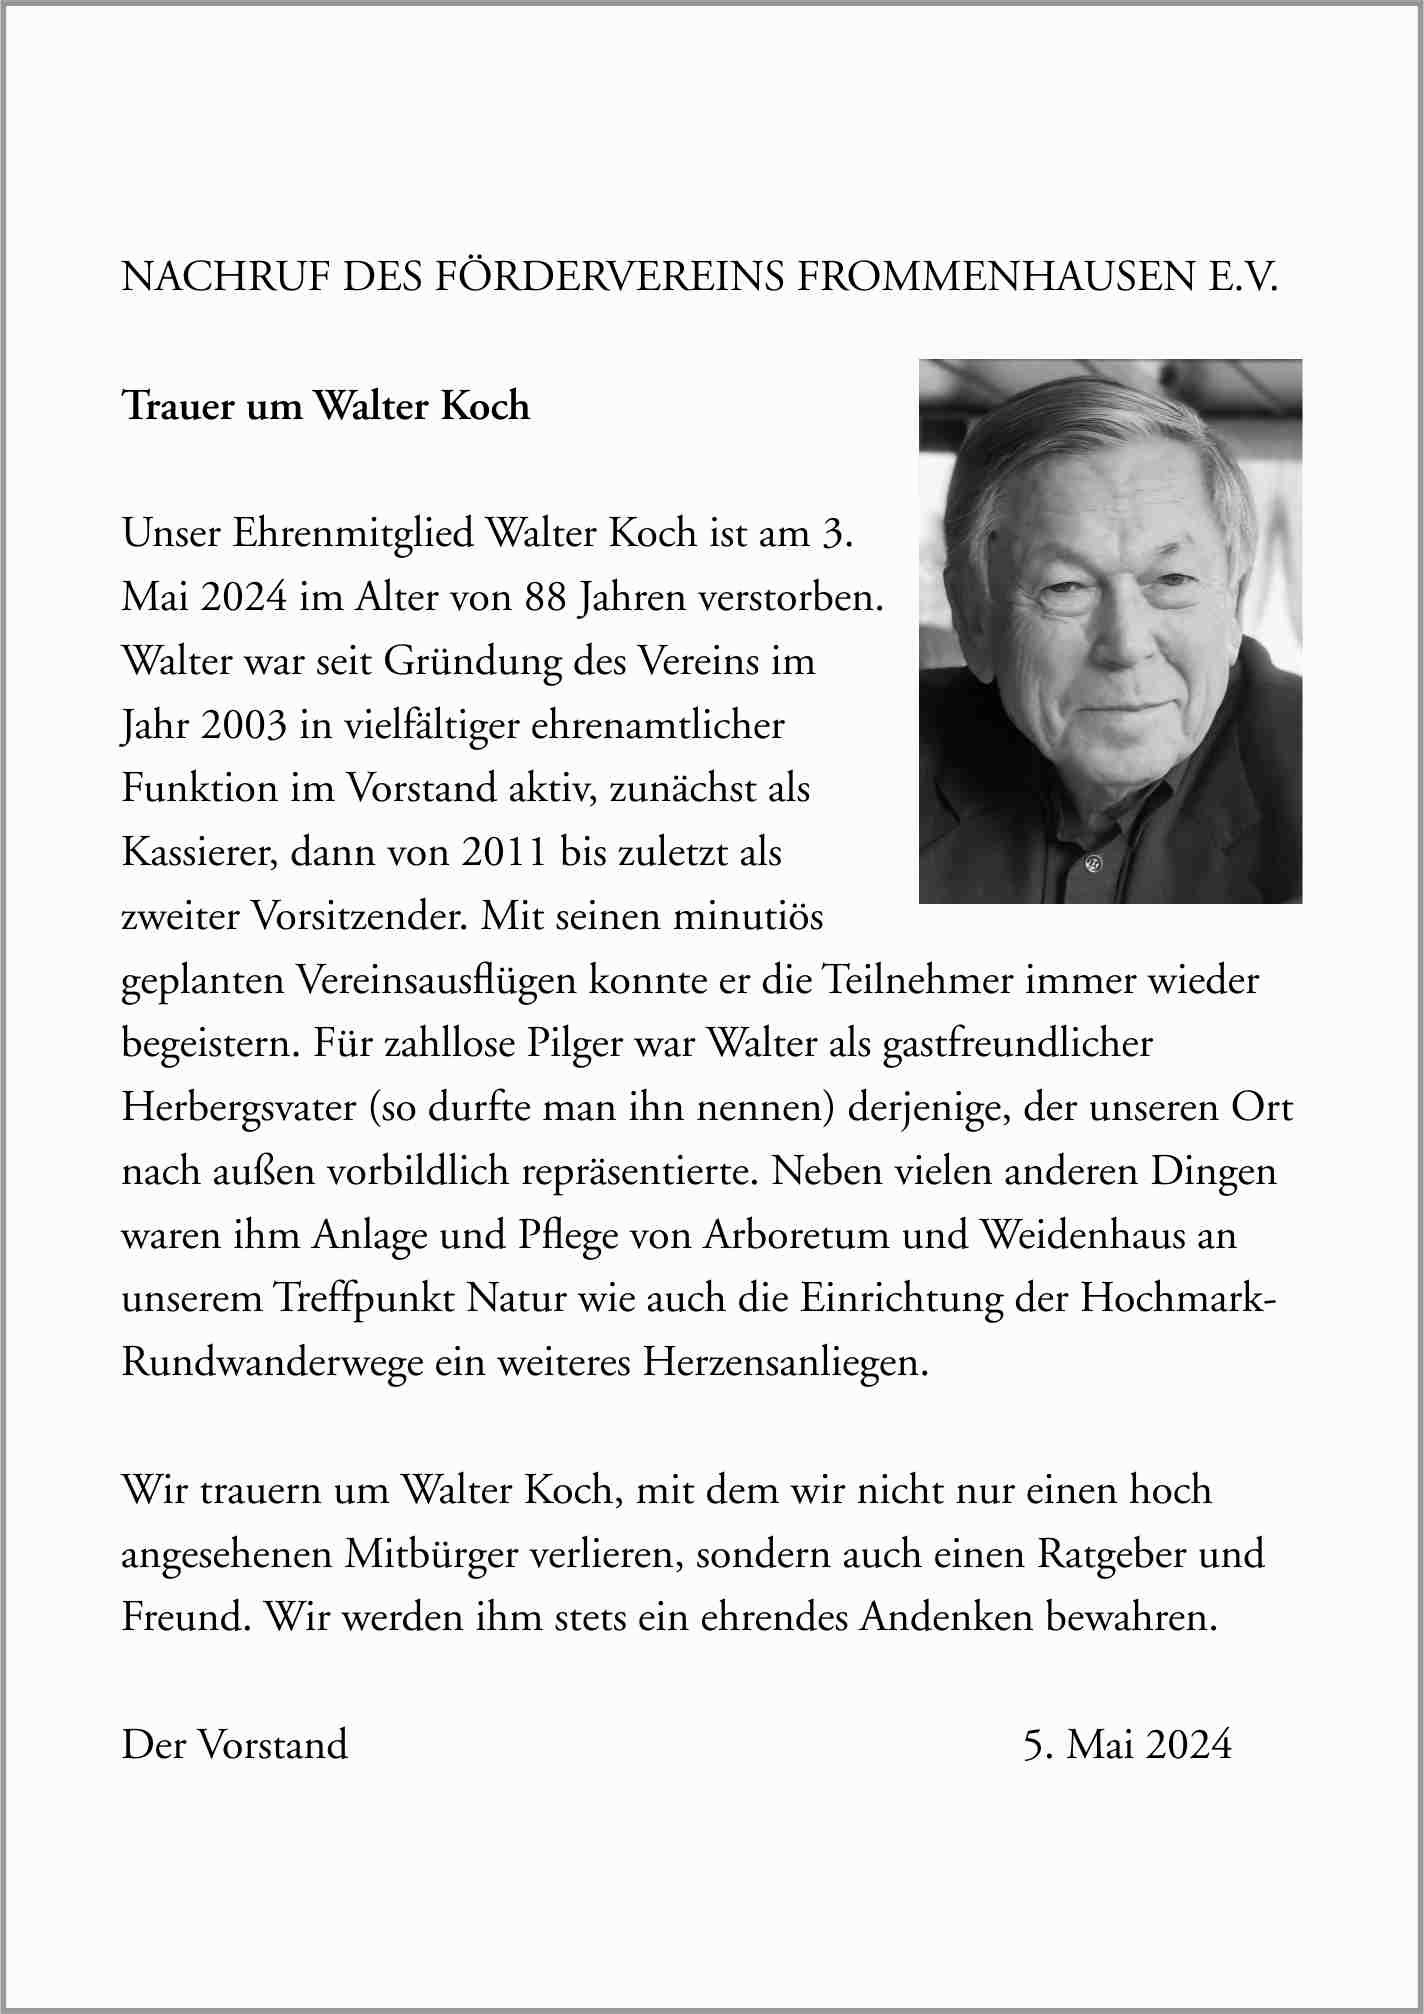 Wir trauern um unseren zweiten Vorsitzenden Walter Koch